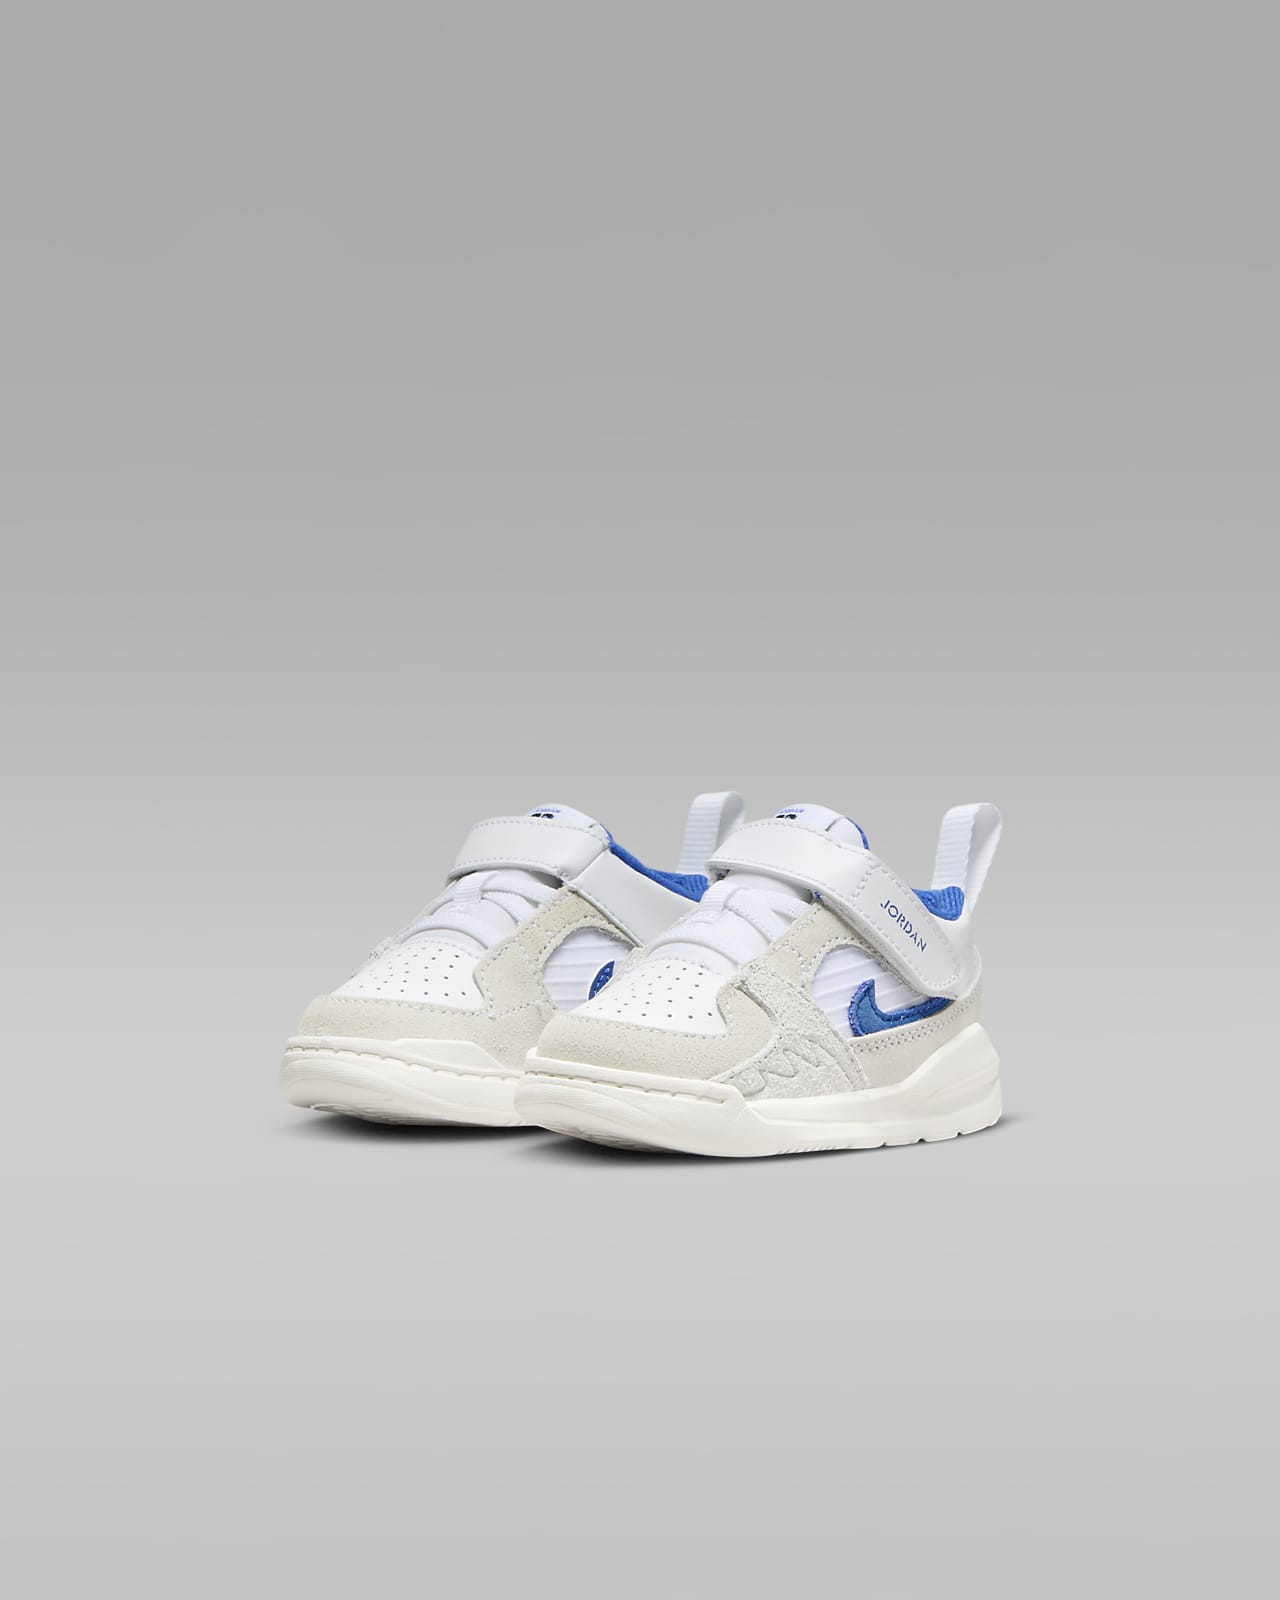 Jordan 3 Retro Baby/Toddler Shoes. Nike LU